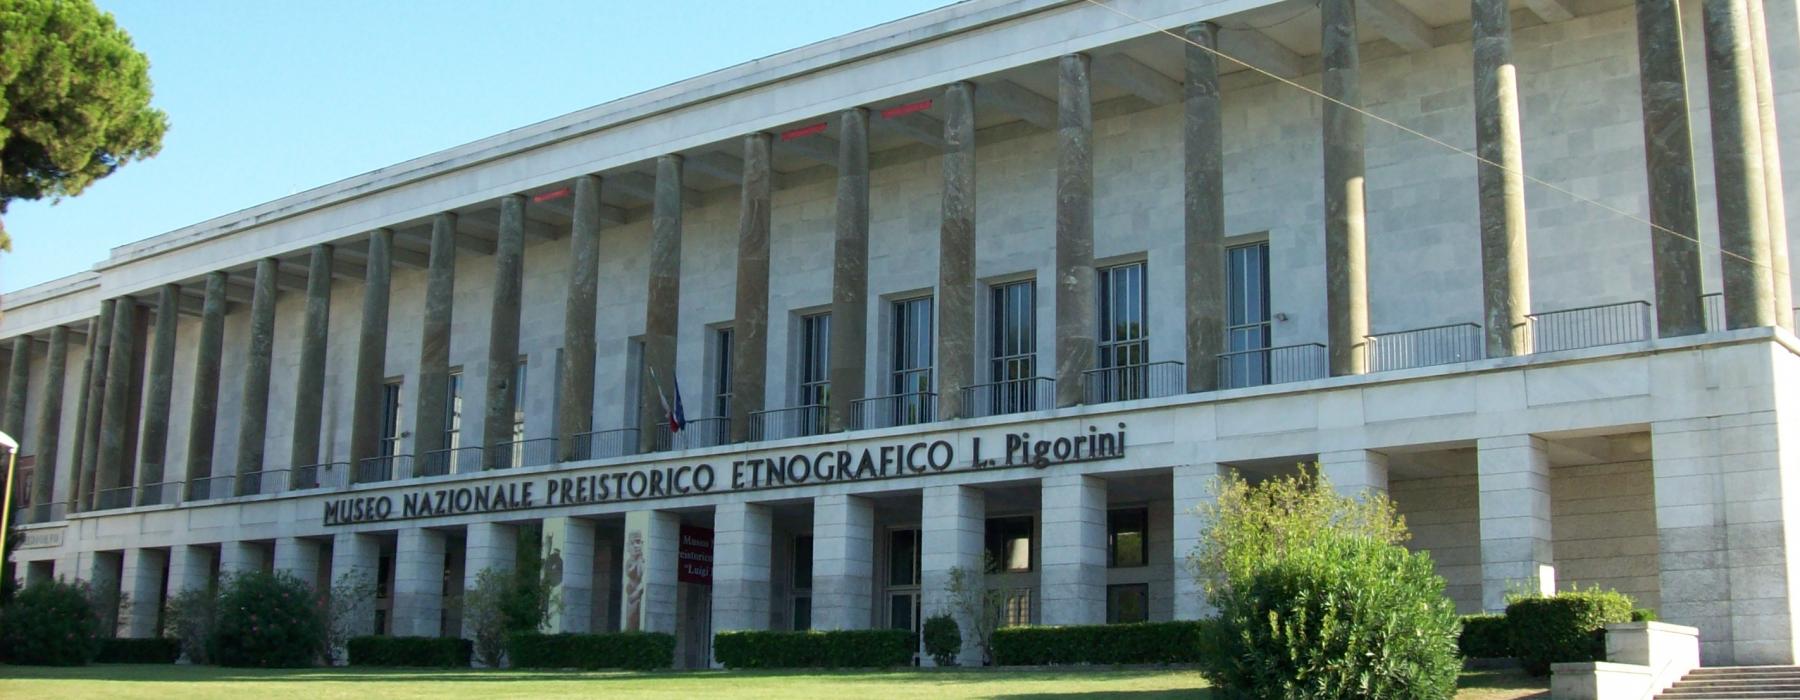 Pigorini Museum